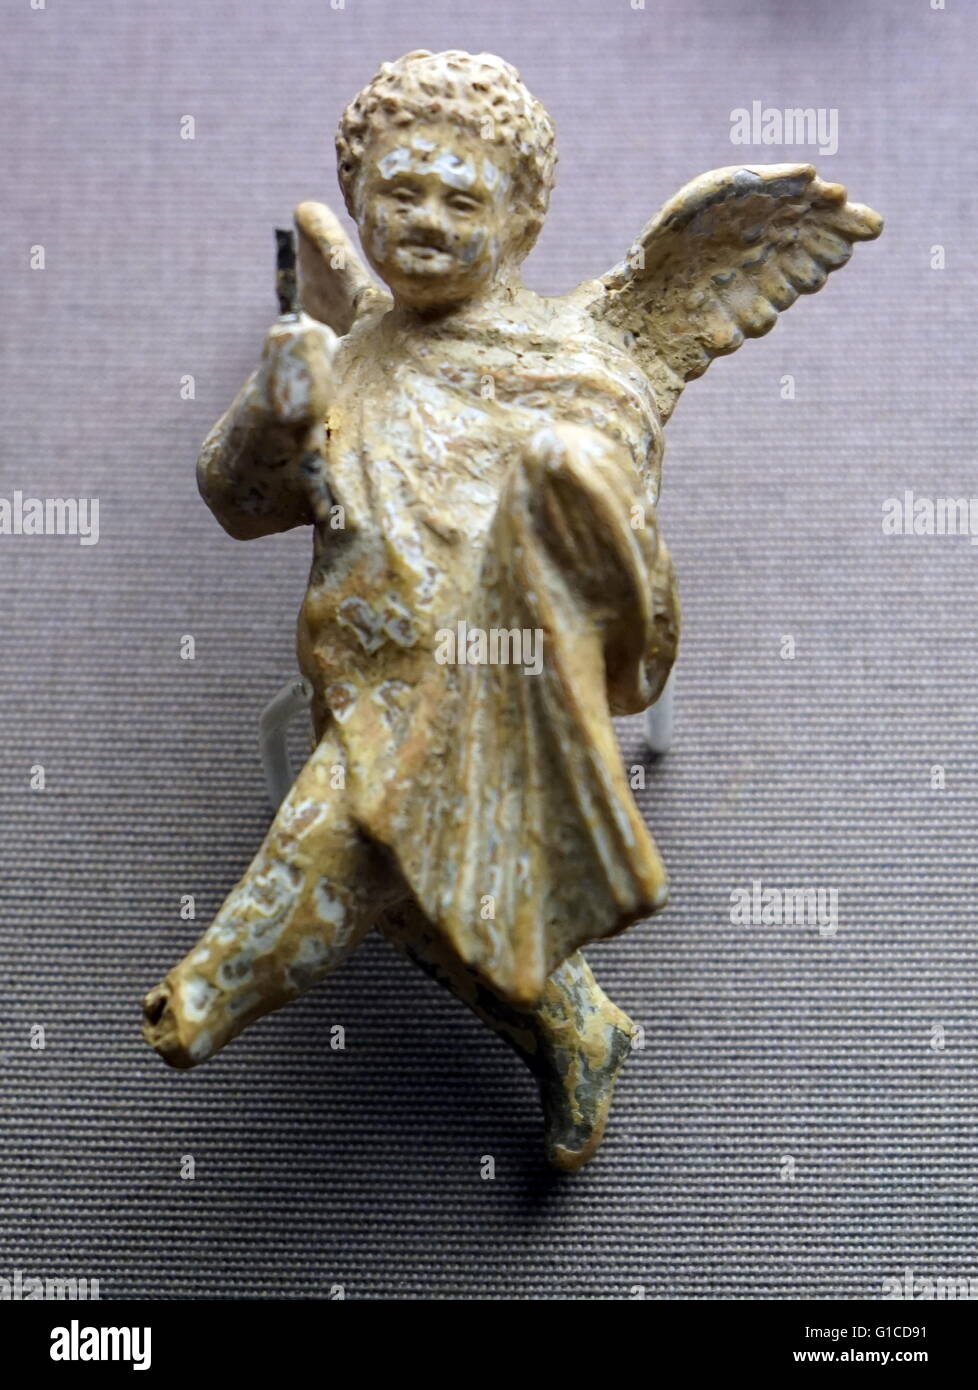 Dipinto e dorato figura in terracotta di Eros, il dio greco di amore in volo. Datata 200 BC Foto Stock